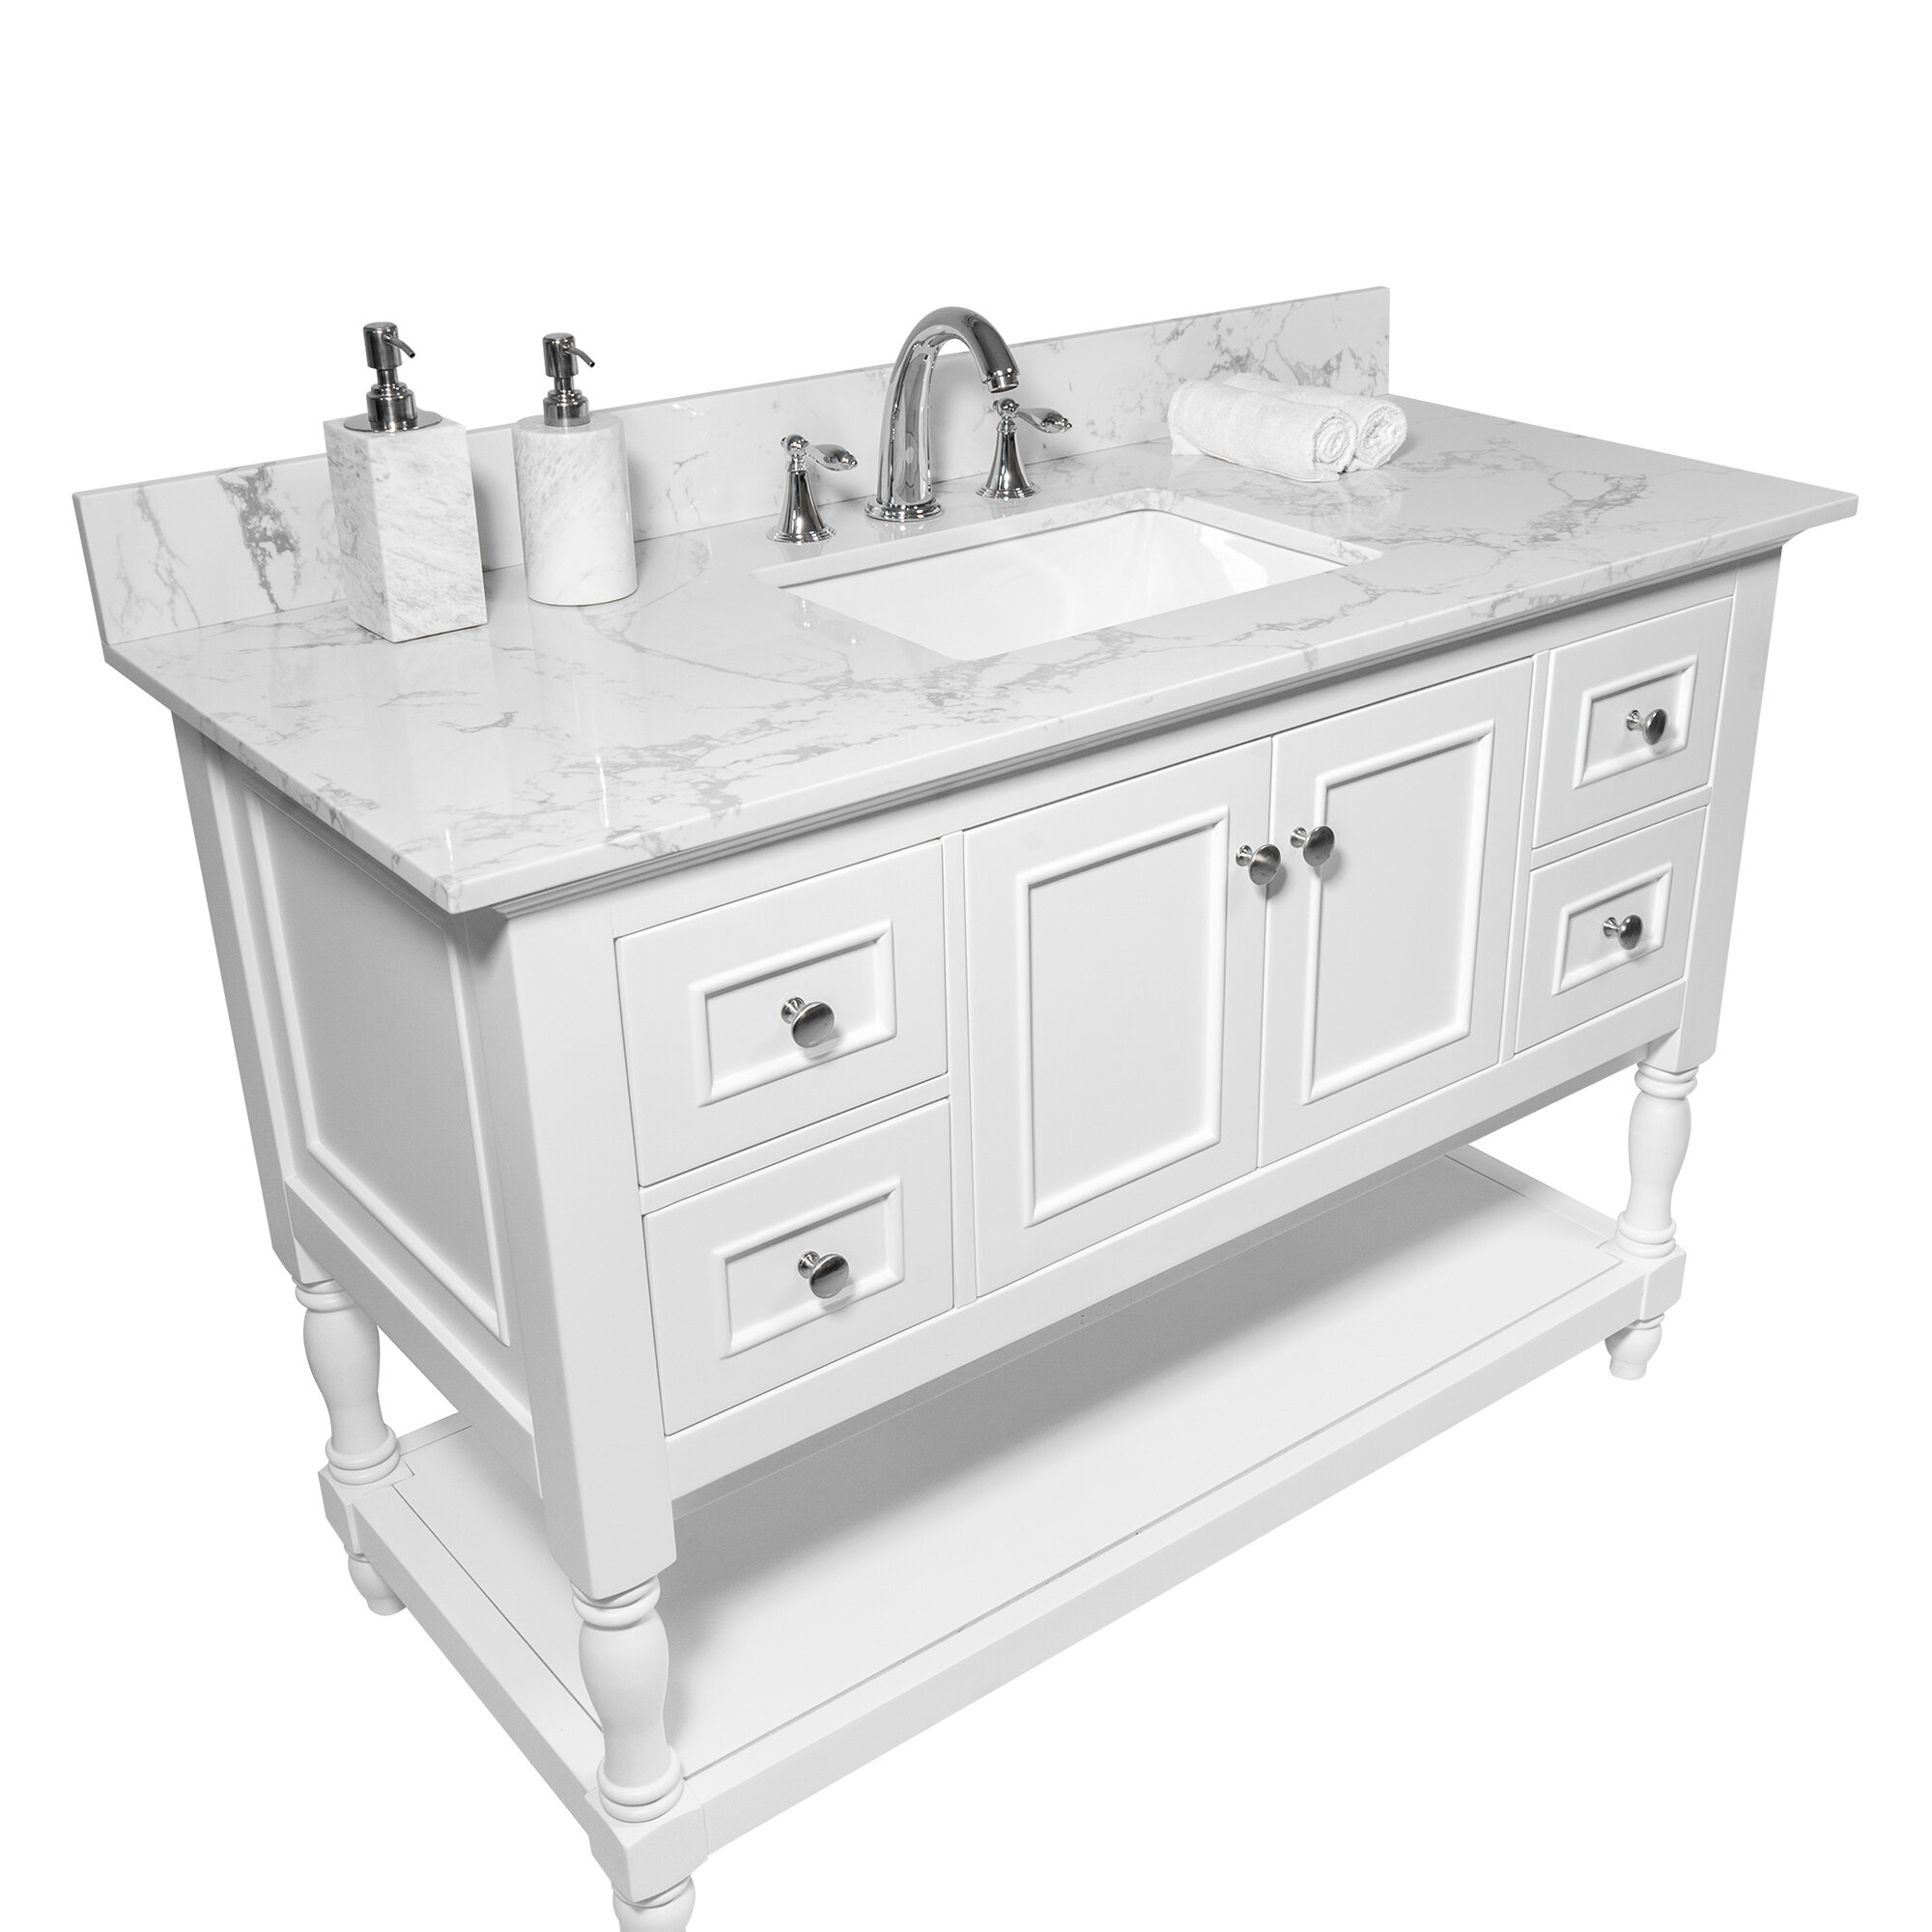 Watqen 43 Single Bathroom Vanity Top In White With Sink Reviews Wayfairca